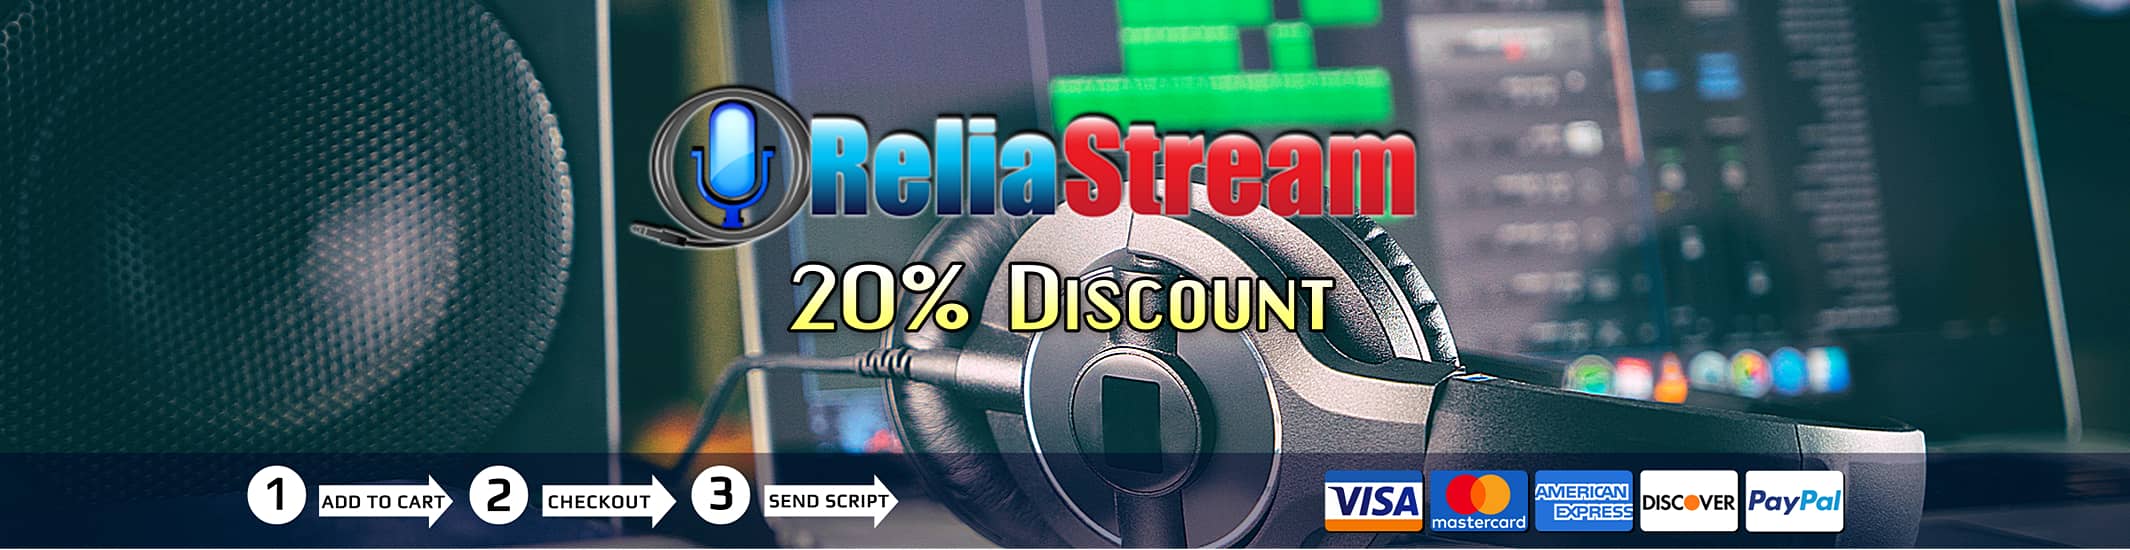 Reliastream 20% Discount